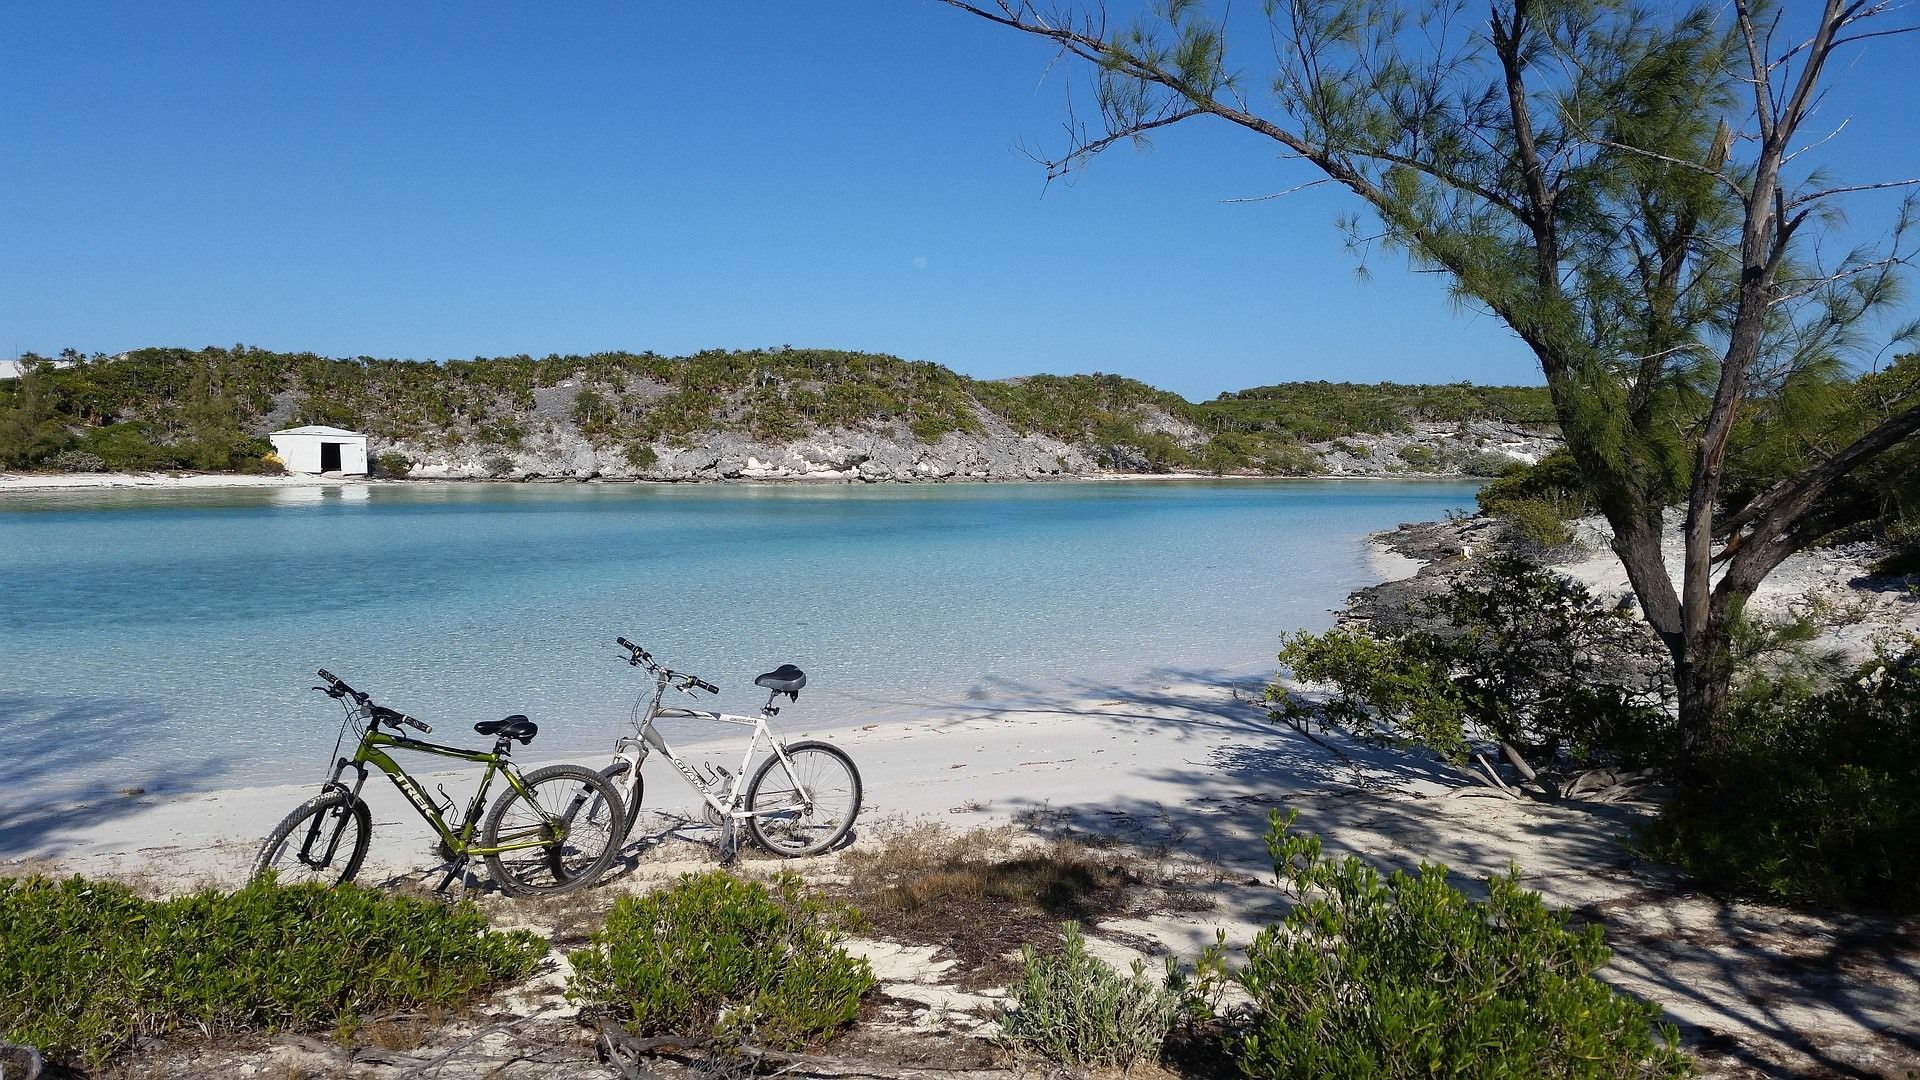 Bikes on a beach in the Bahamas